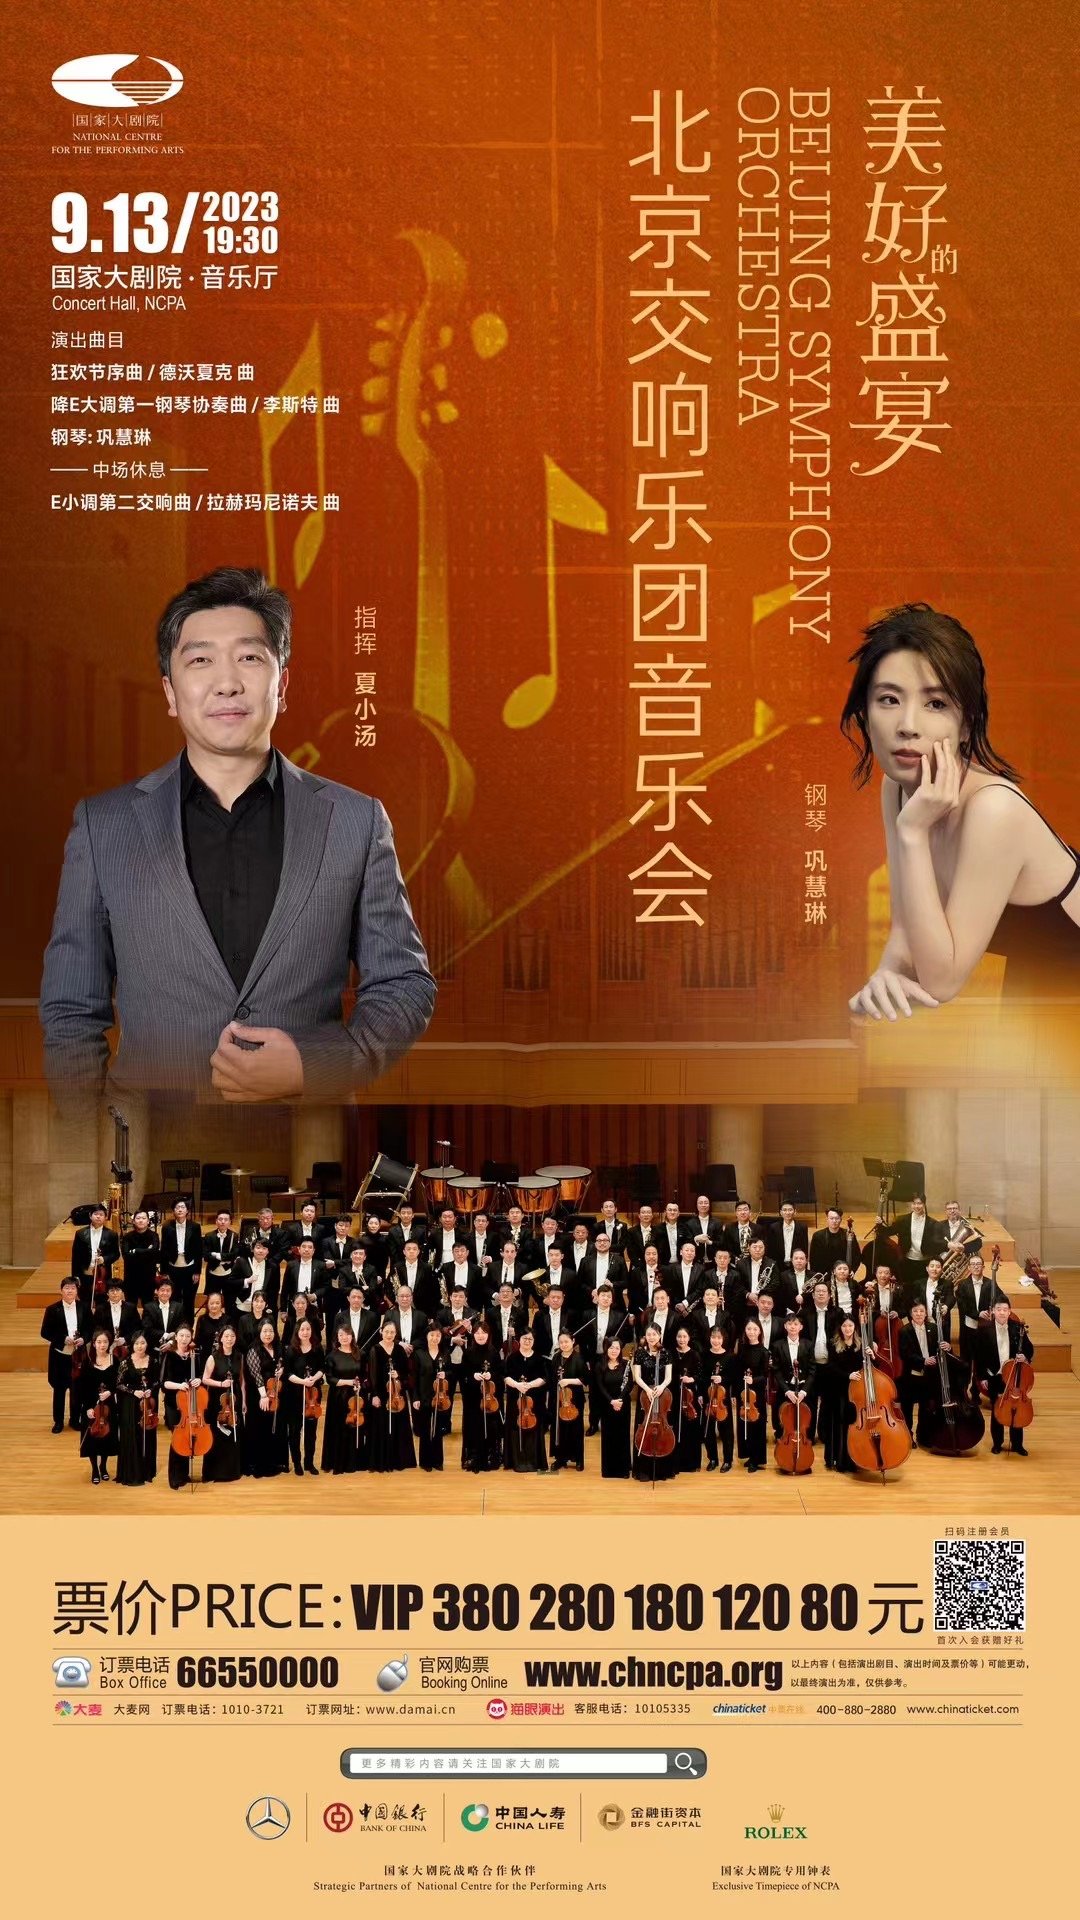 国家大剧院 与北京交响乐团音乐会——“美的盛宴”